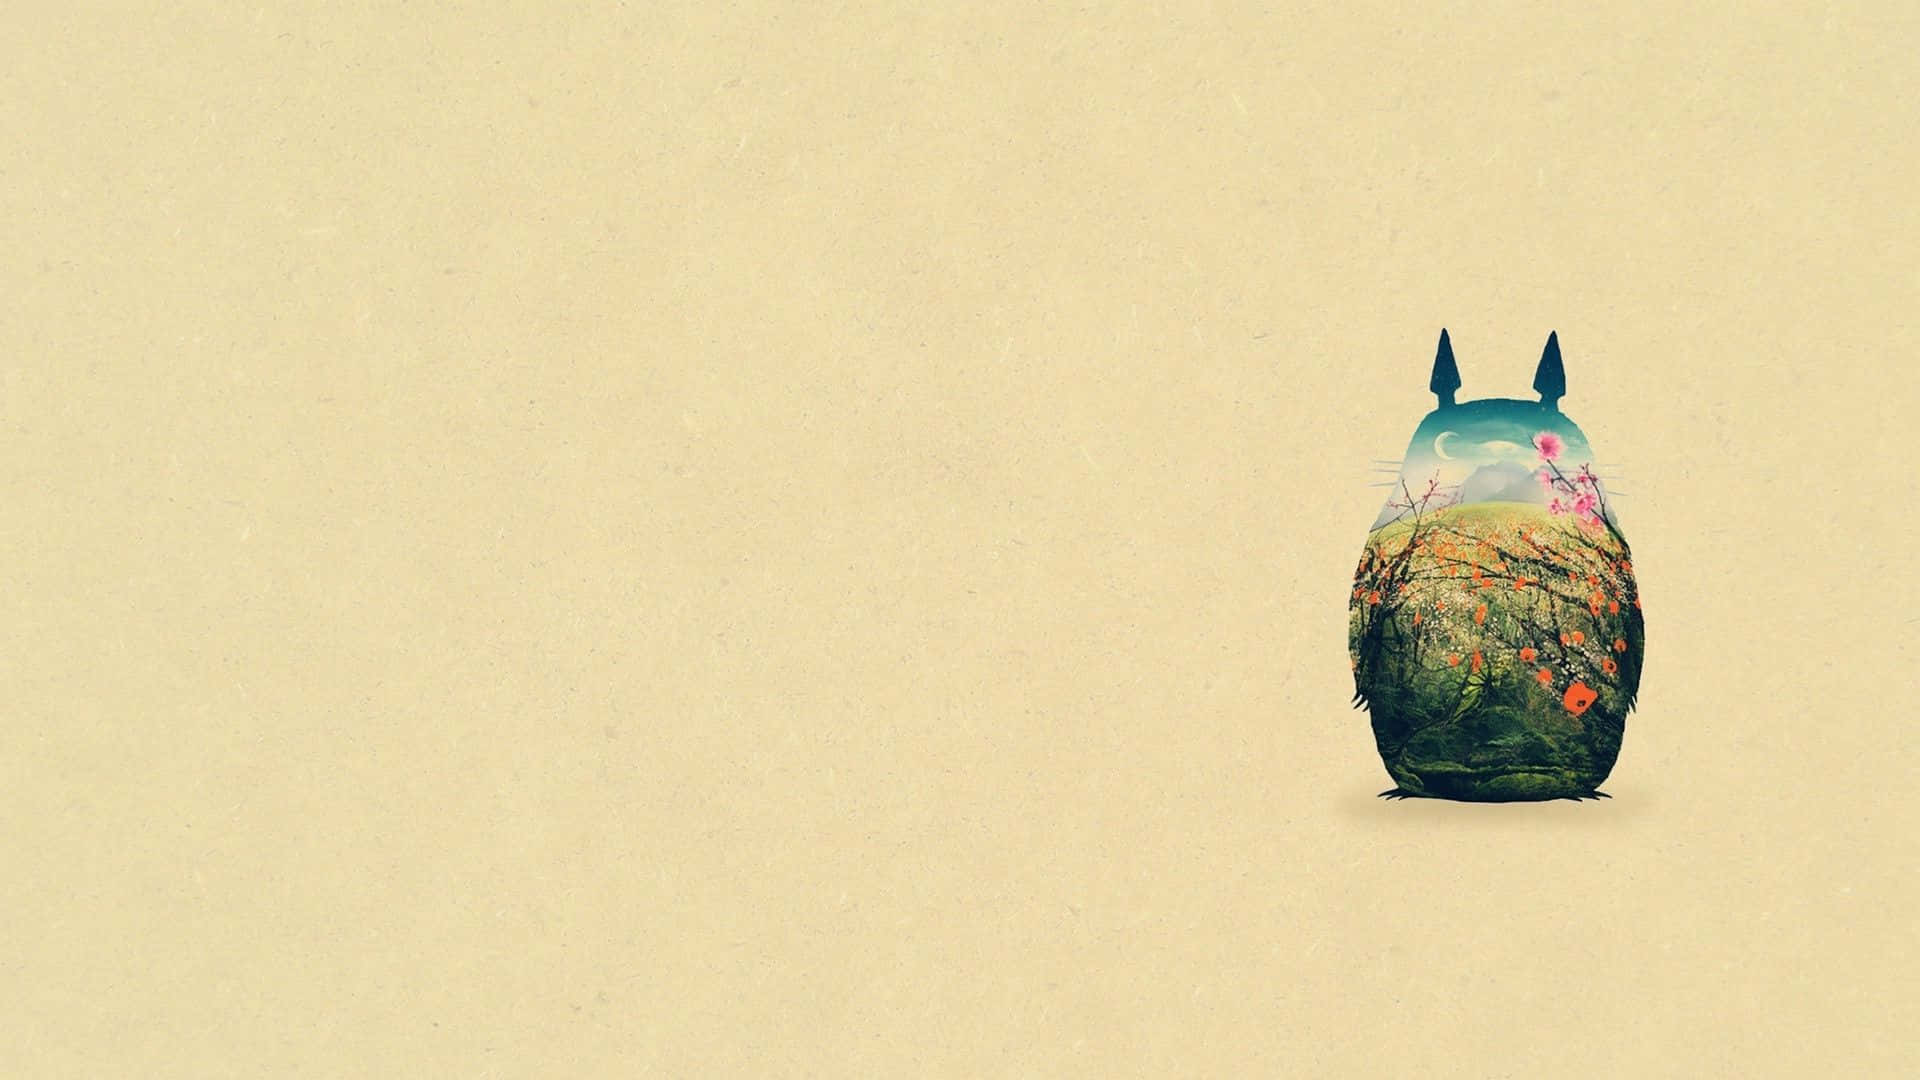 Elquerido Personaje De La Película Totoro En Su Icónico Traje Y Sombrero Azul.